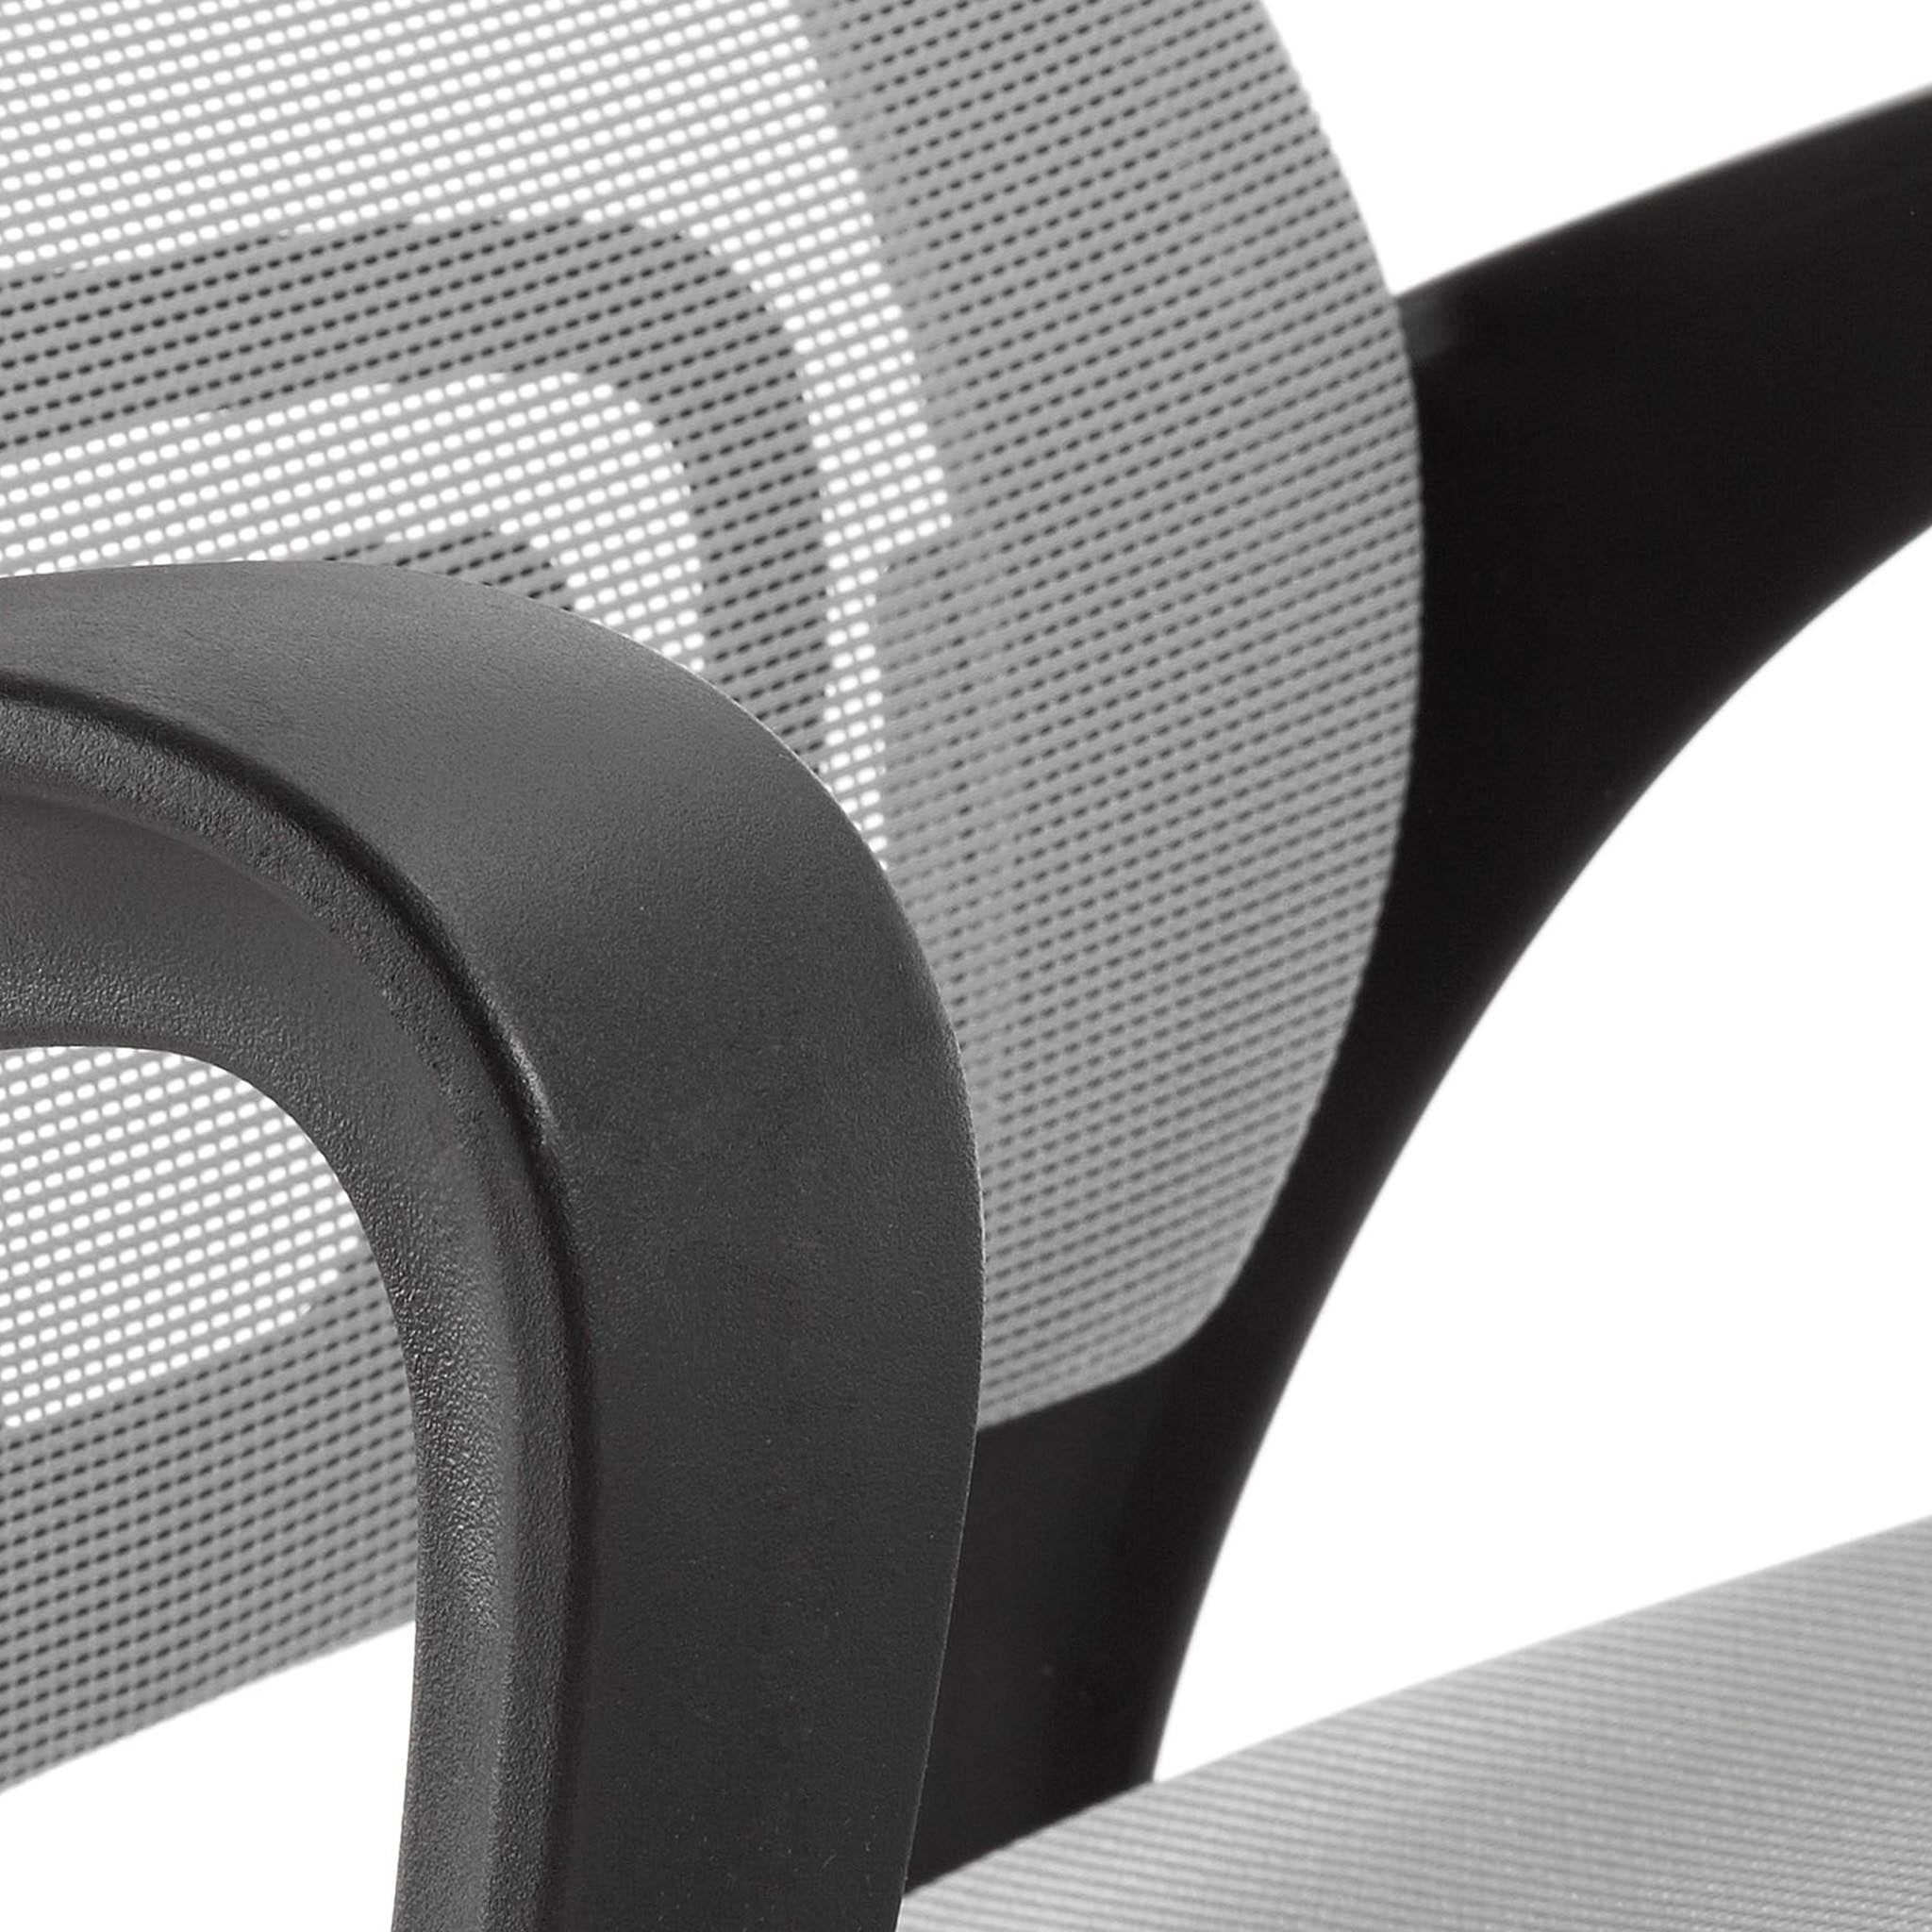 Kave Home Rail Bürostuhl & Schreibtischstuhl - In Farbe Grau - SKU #c563j03 - Lehne Textur